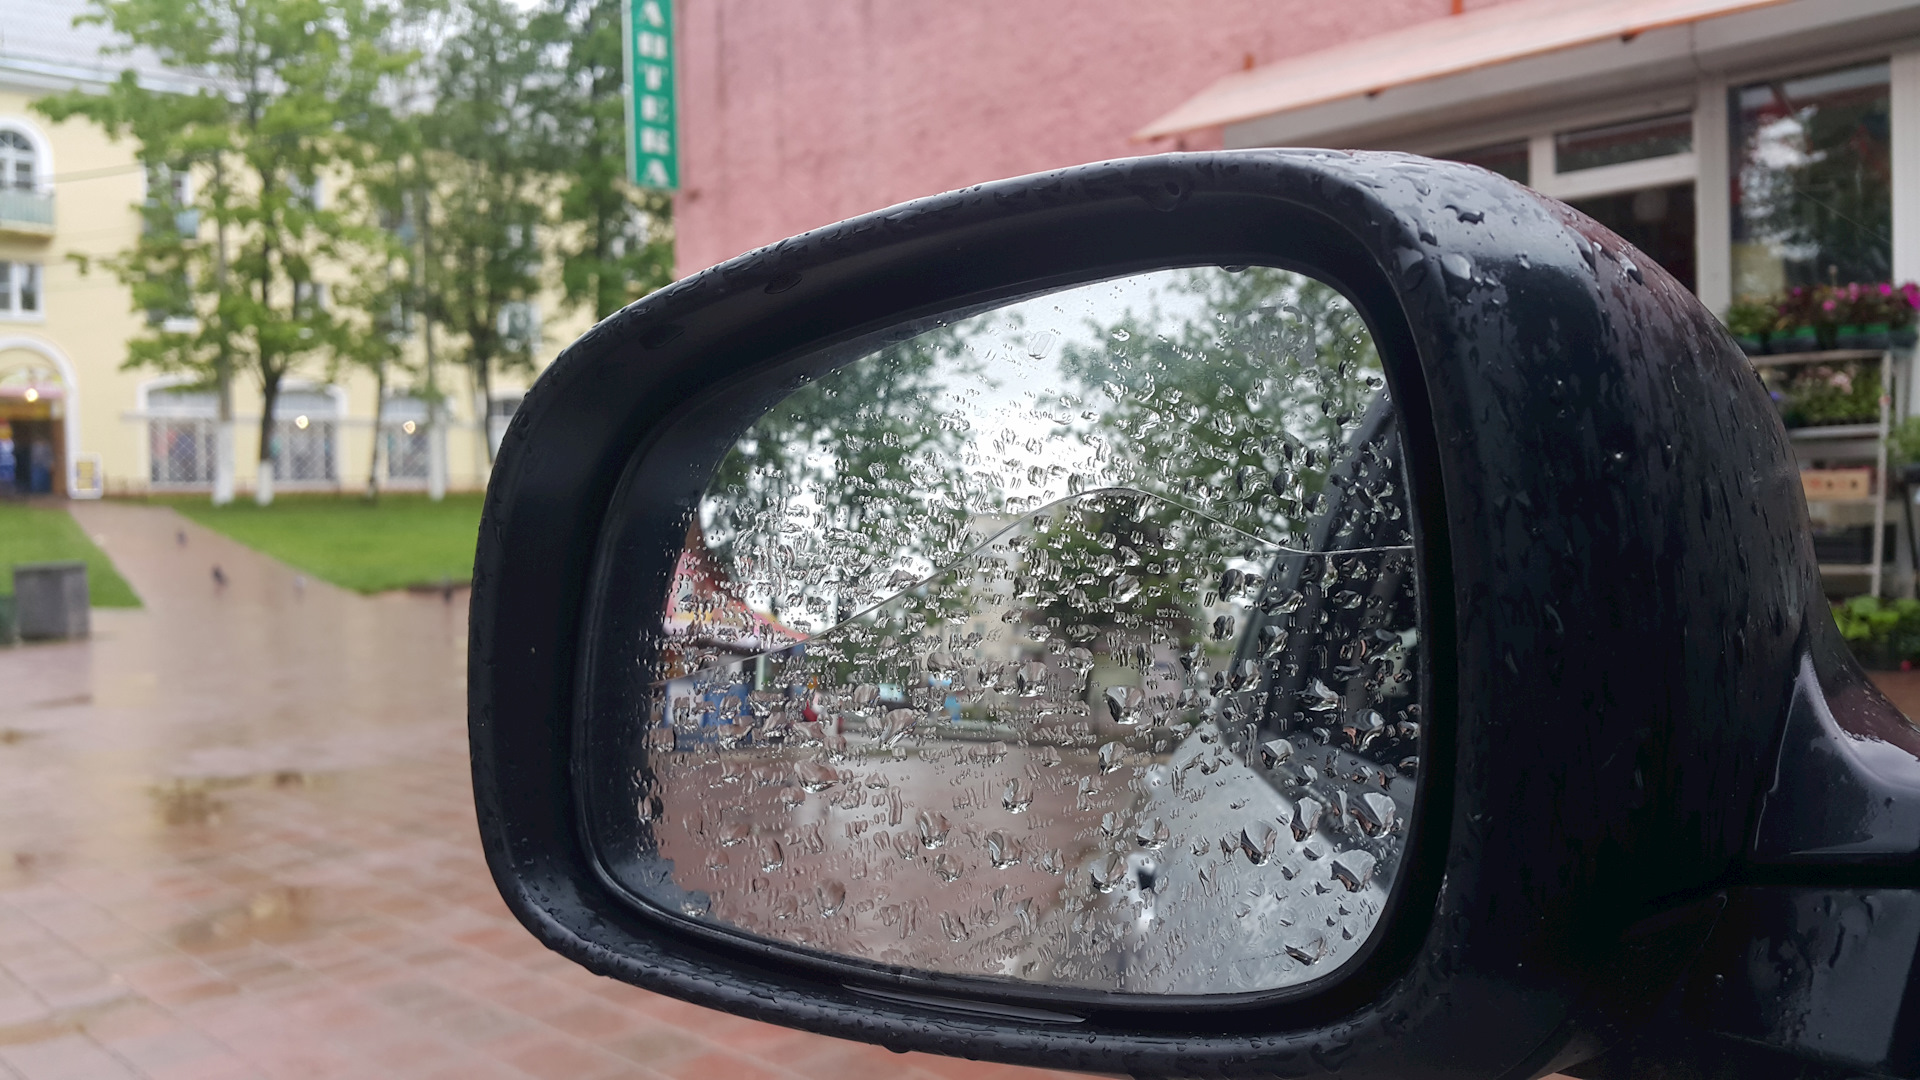 Зеркальный элемент Suzuki Swift 3 с подогревом. Водительское зеркало. Оторванное водительское зеркало у exceed LX серый цвет реальное фото.